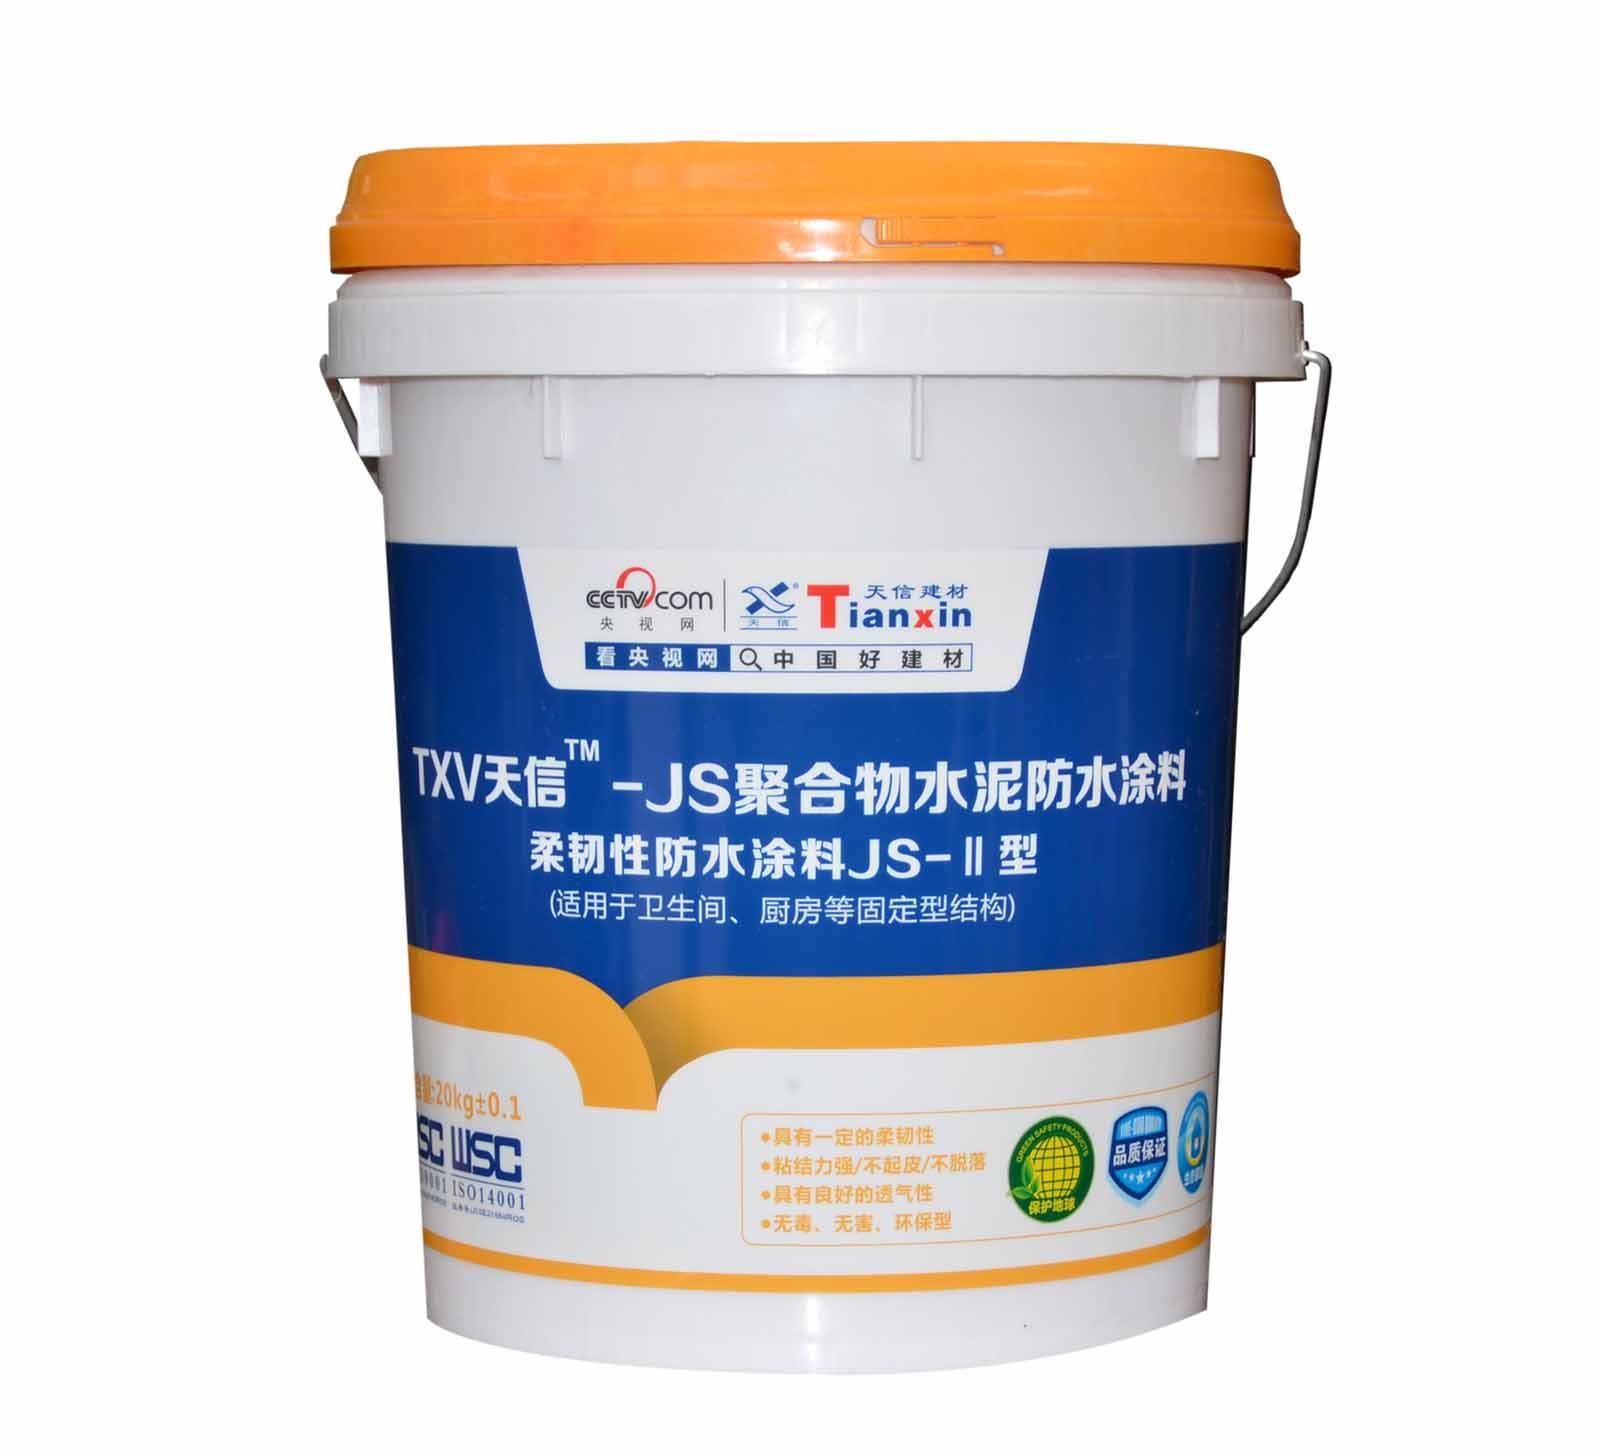 JS聚合物水泥防水涂料 刚韧性防水涂料JS-III型